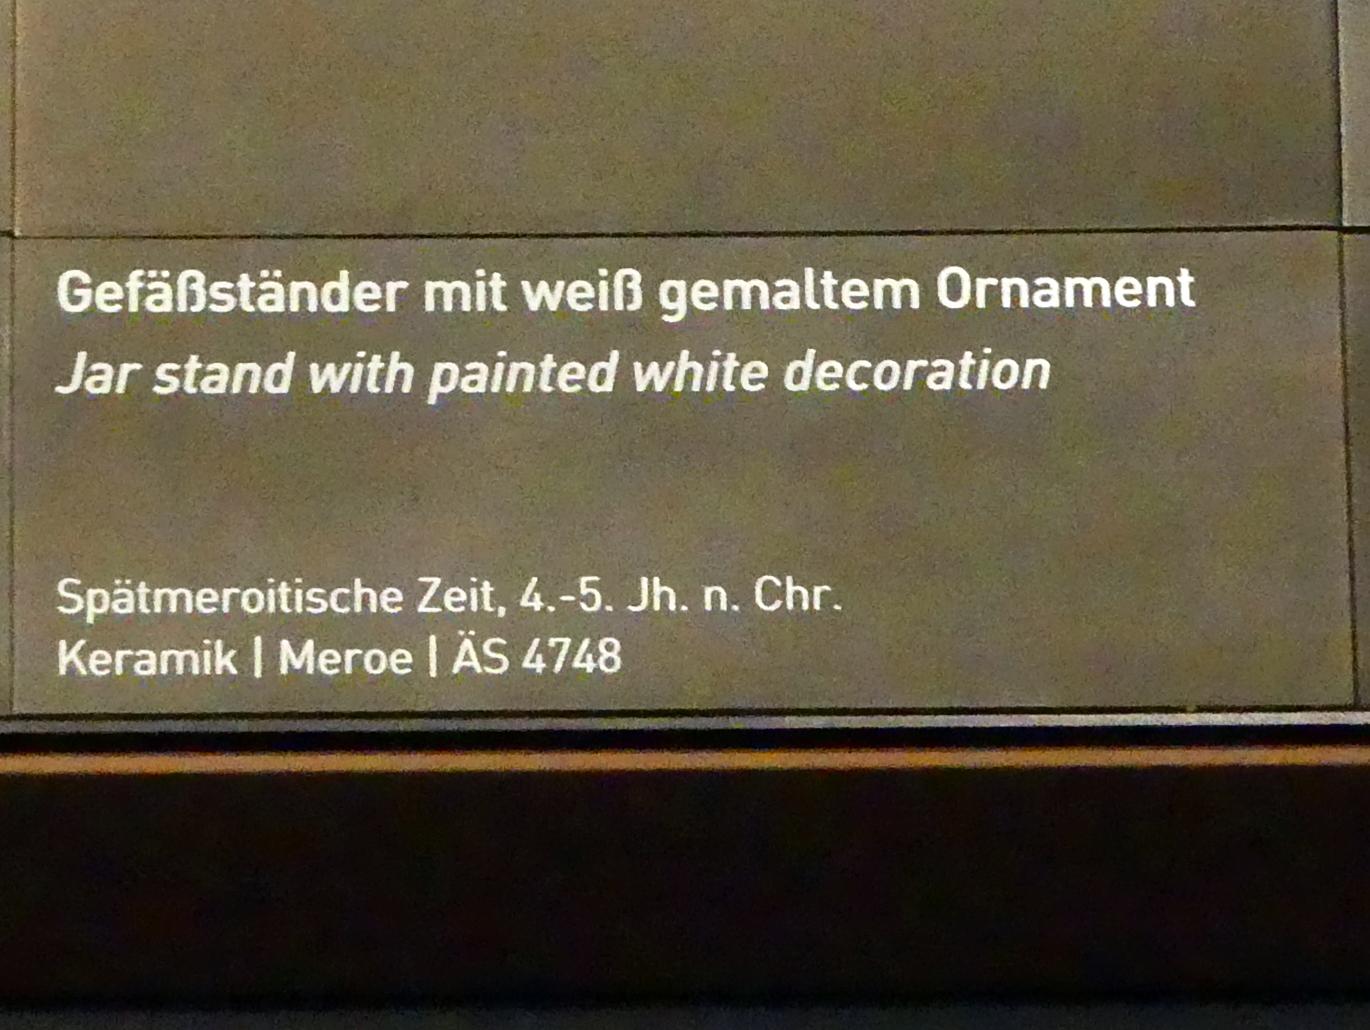 Gefäßständer mit weiß bemaltem Ornament, Meroitische Zeit, 200 v. Chr. - 500 n. Chr., 300 - 500, Bild 2/2